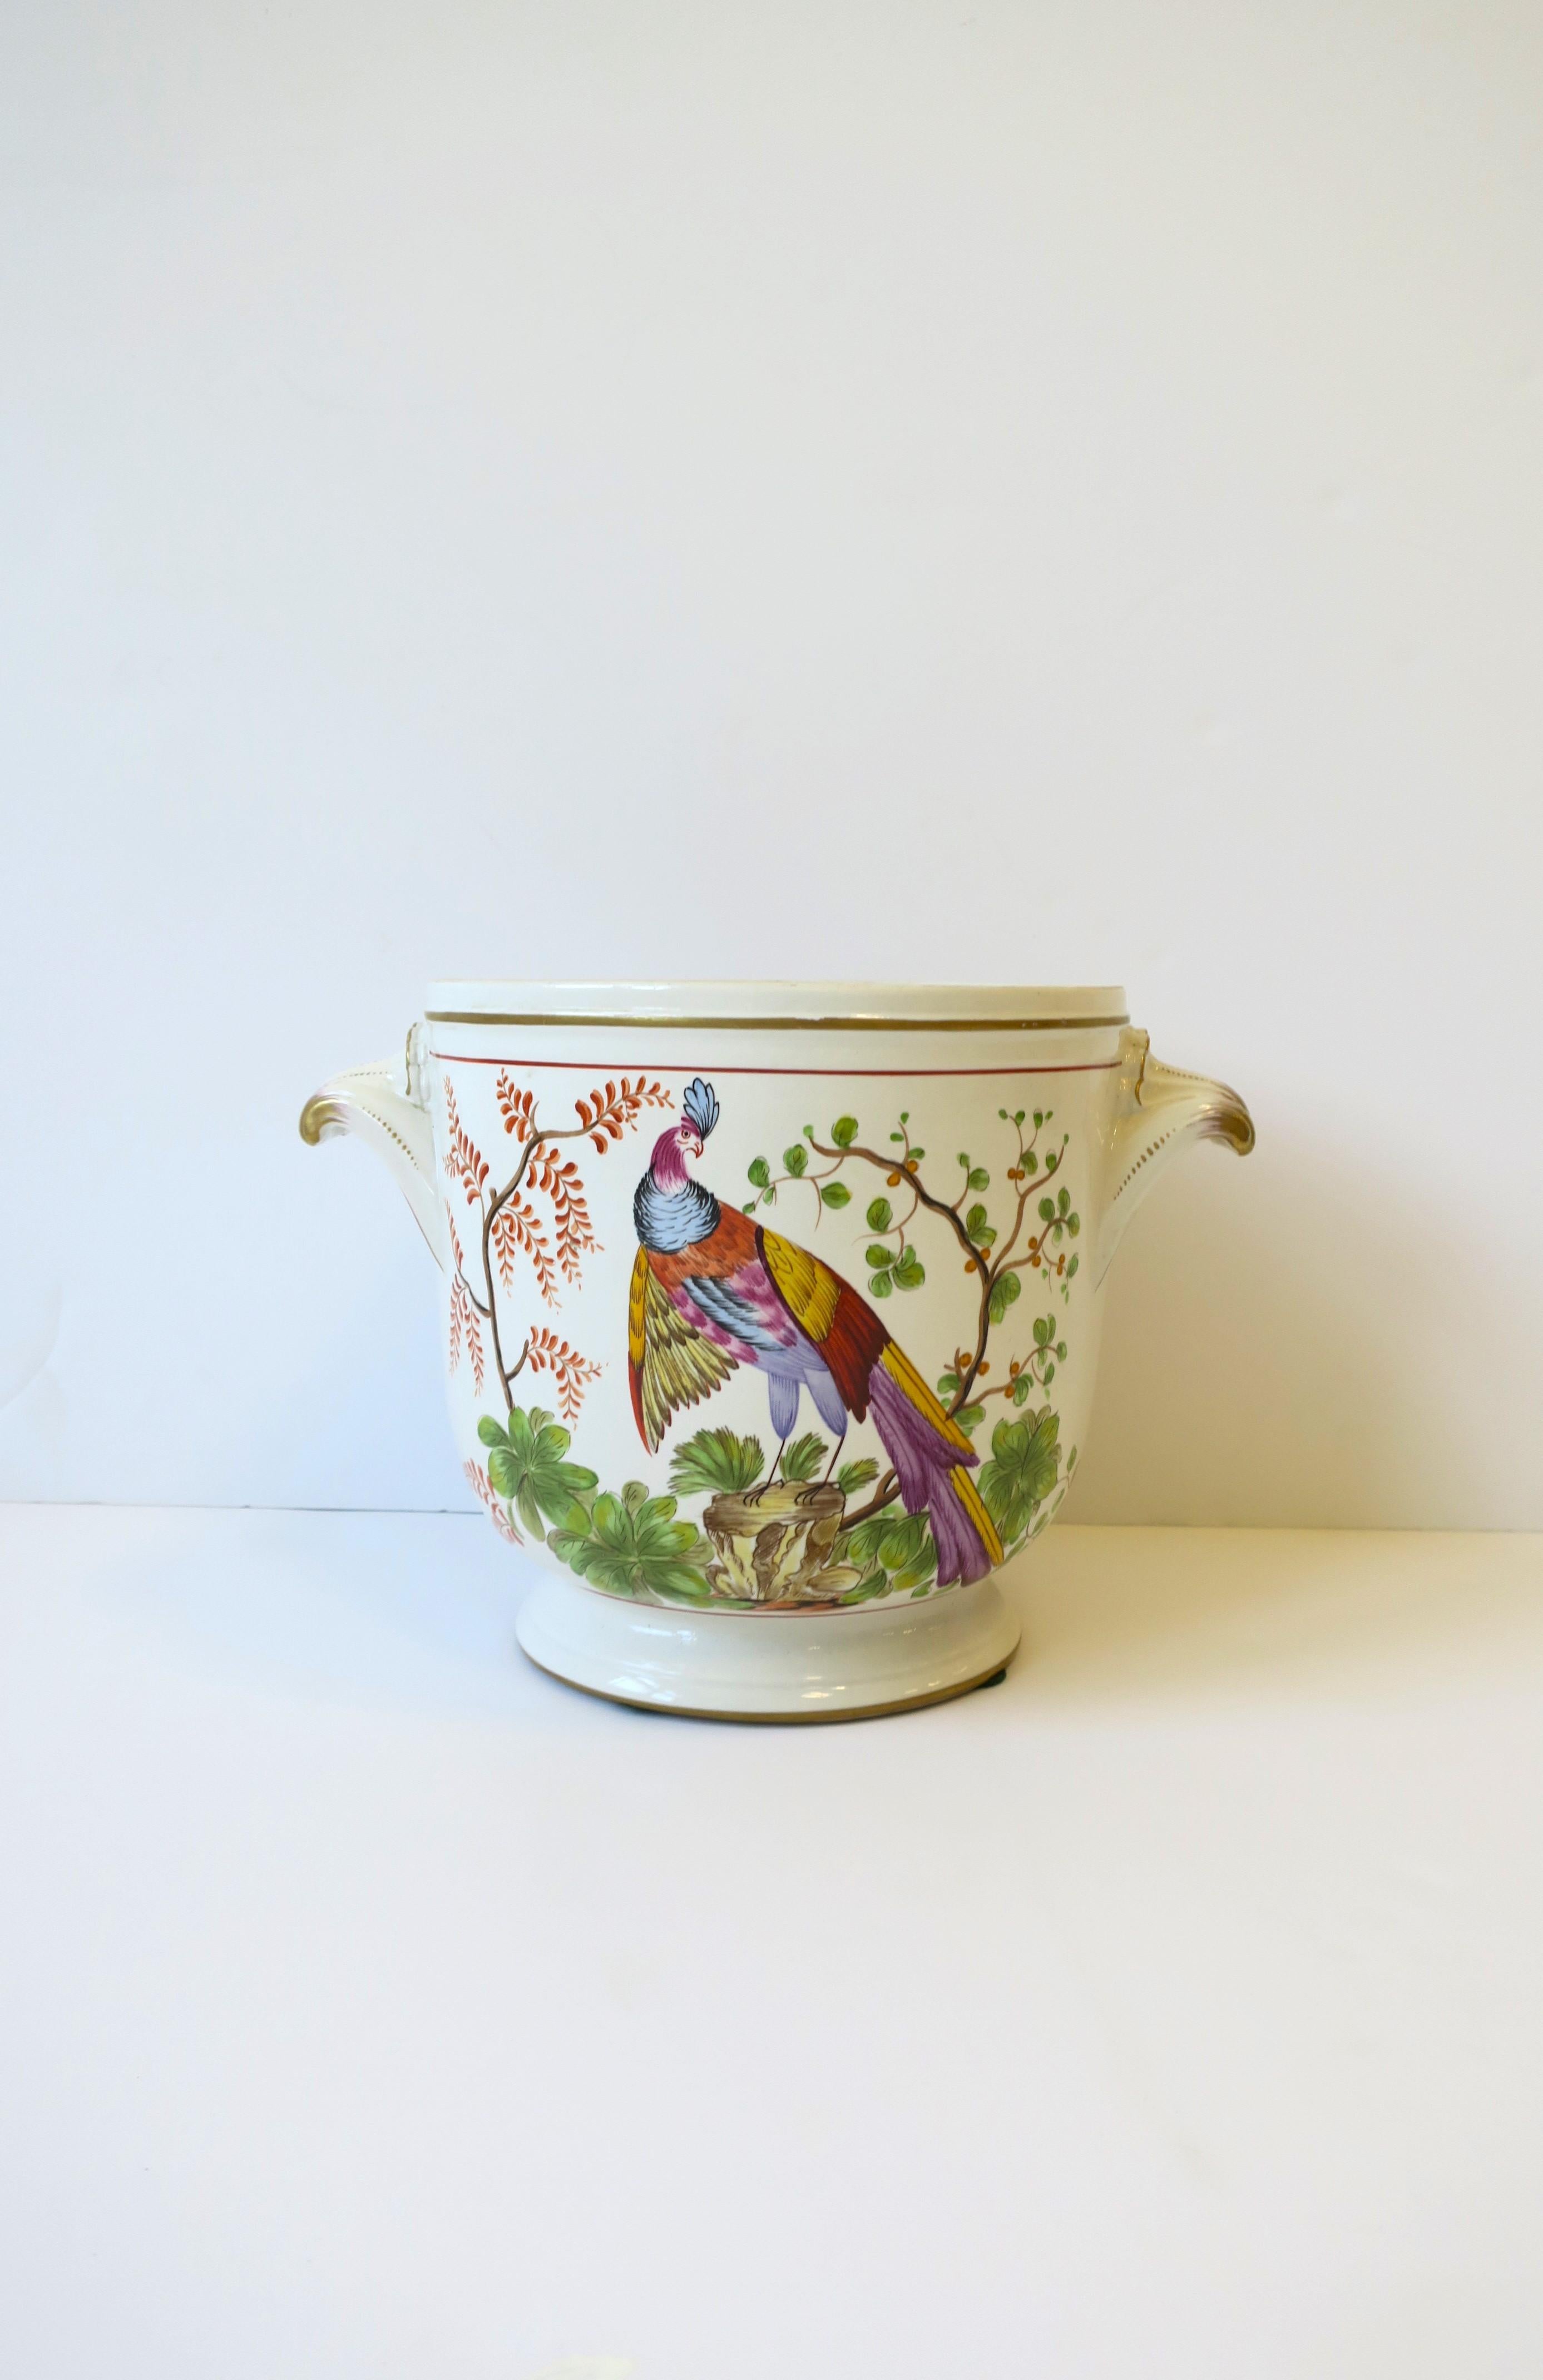 Magnifique cache-pot jardinière italienne avec oiseau paon par Mottahedeh, vers le milieu du 20e siècle, Italie. Le pot est en céramique blanc cassé crème avec un oiseau paon coloré proéminent sur le devant, un feuillage de jardin sur le dos, et des